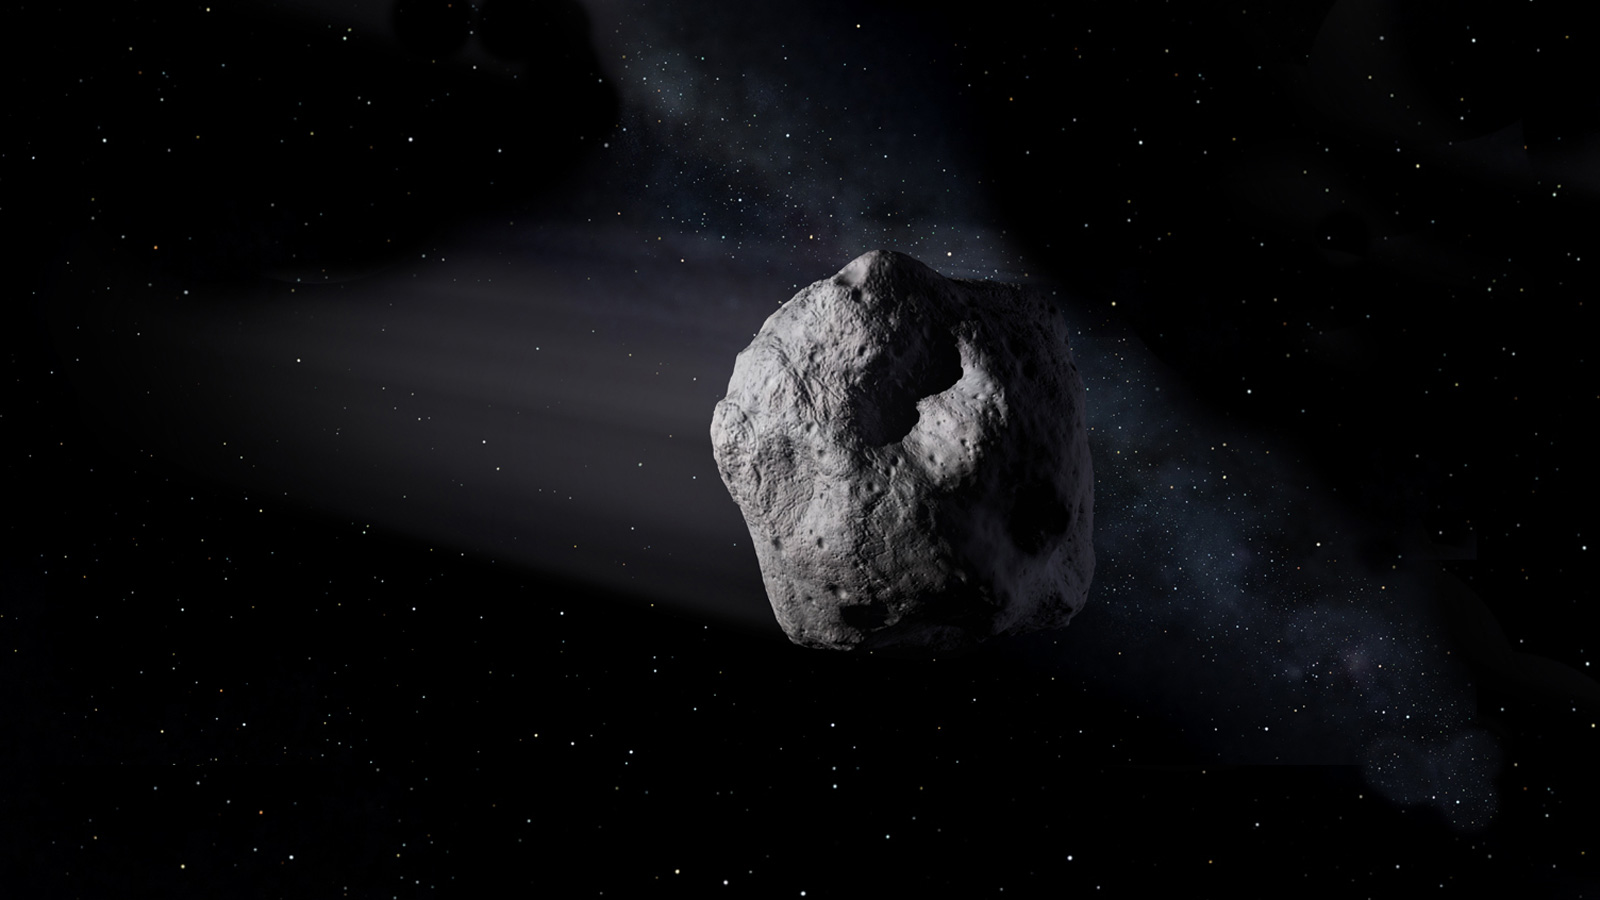 Representación artística de un asteroide cercano a la Tierra.